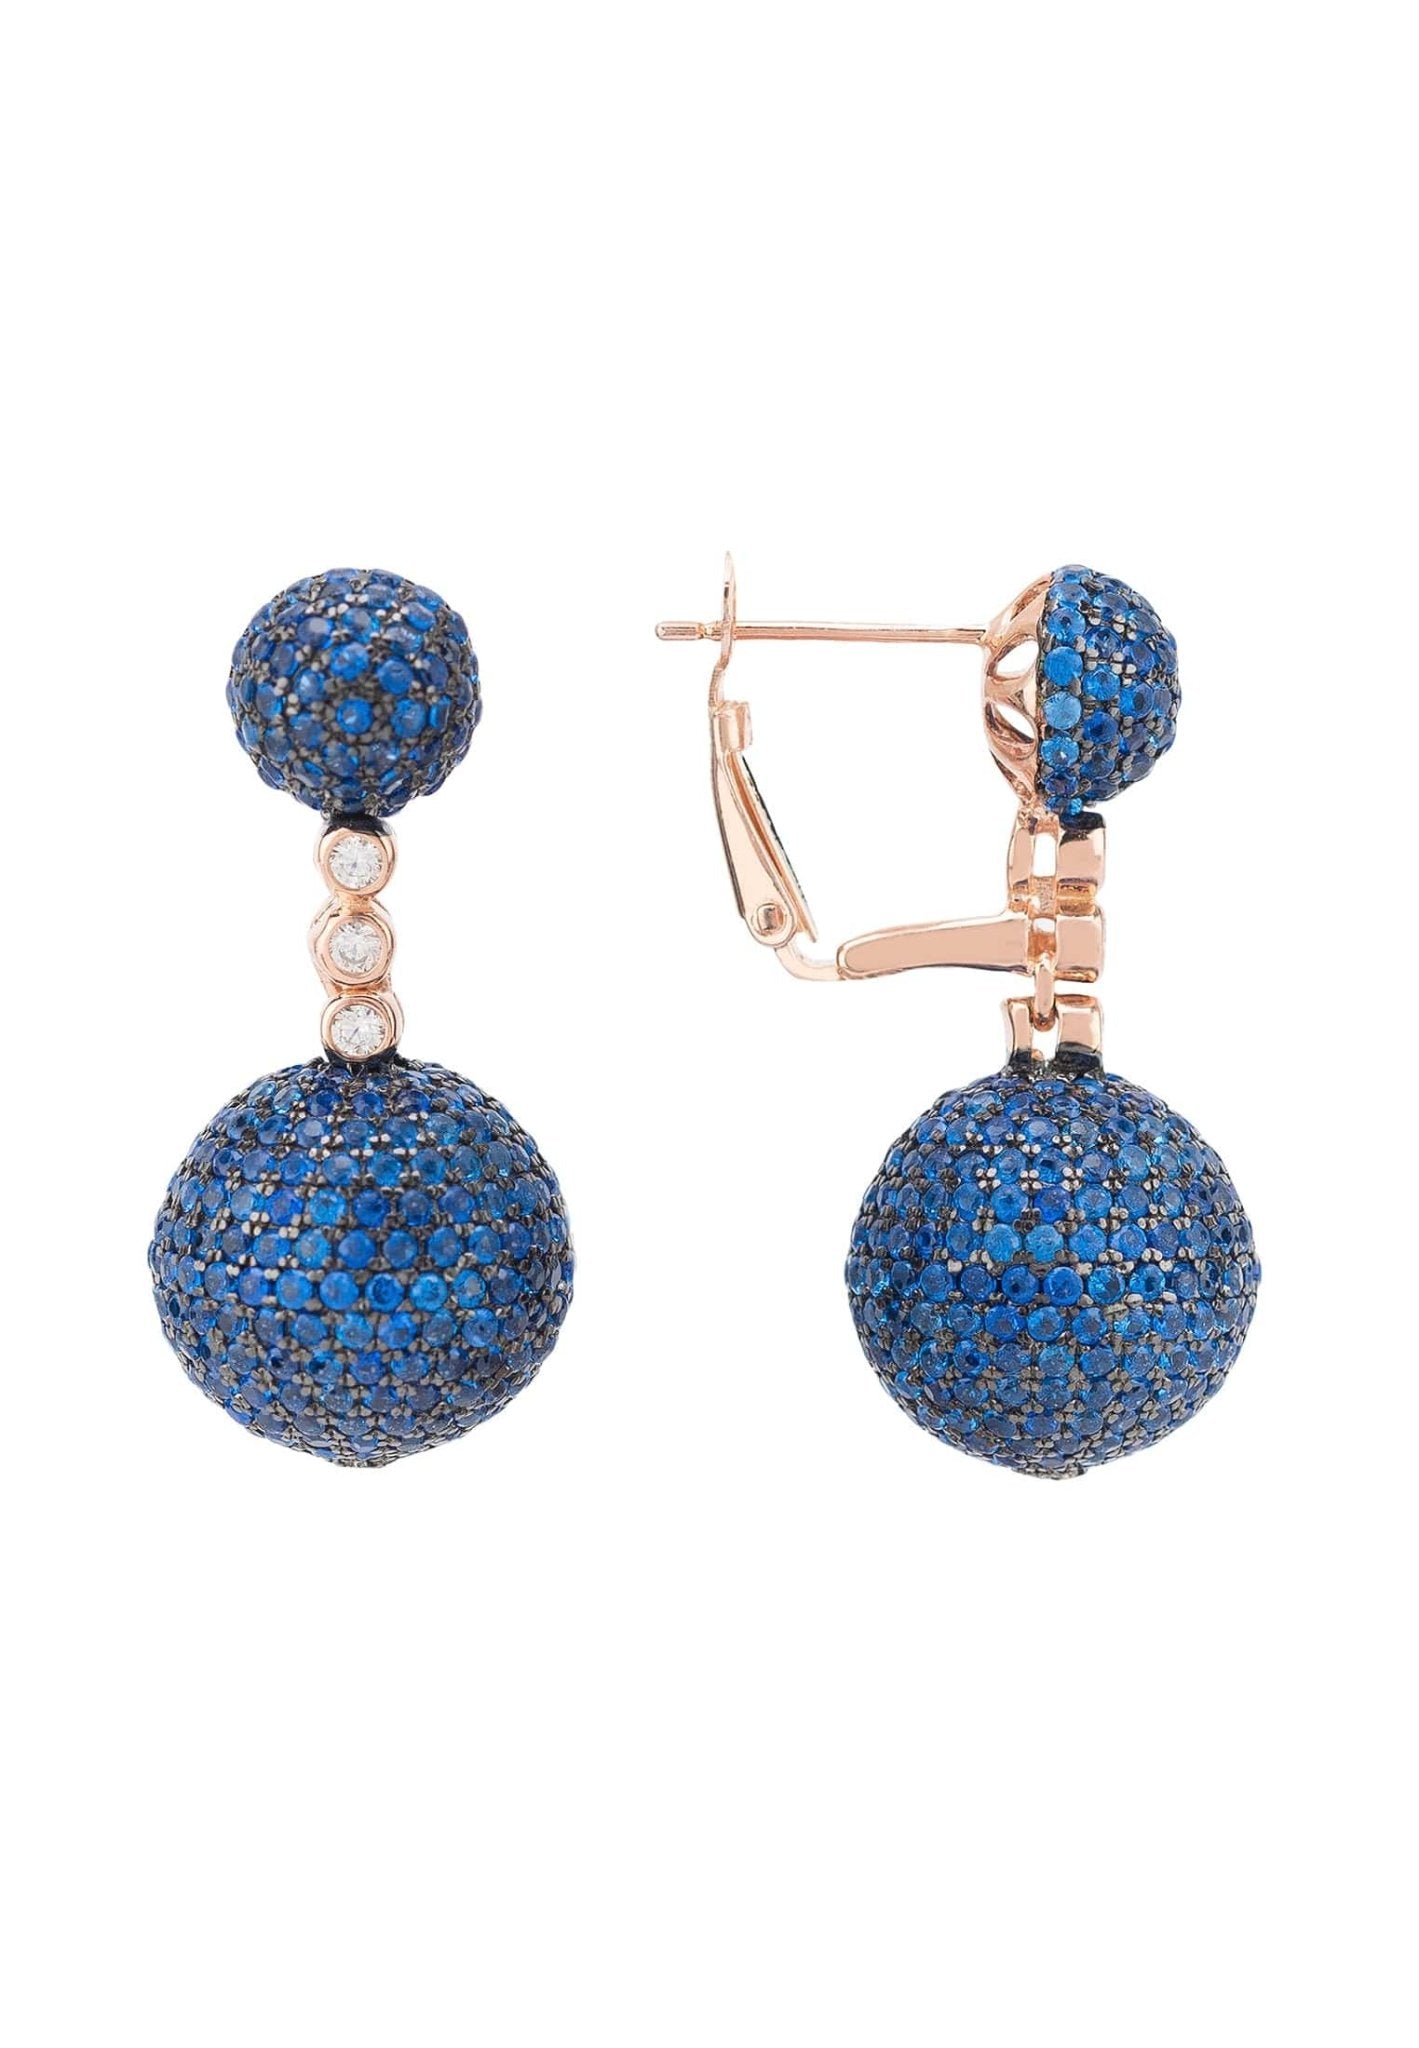 Monaco Sphere Drop Earrings Rosegold Sapphire Blue Cz - LATELITA Earrings